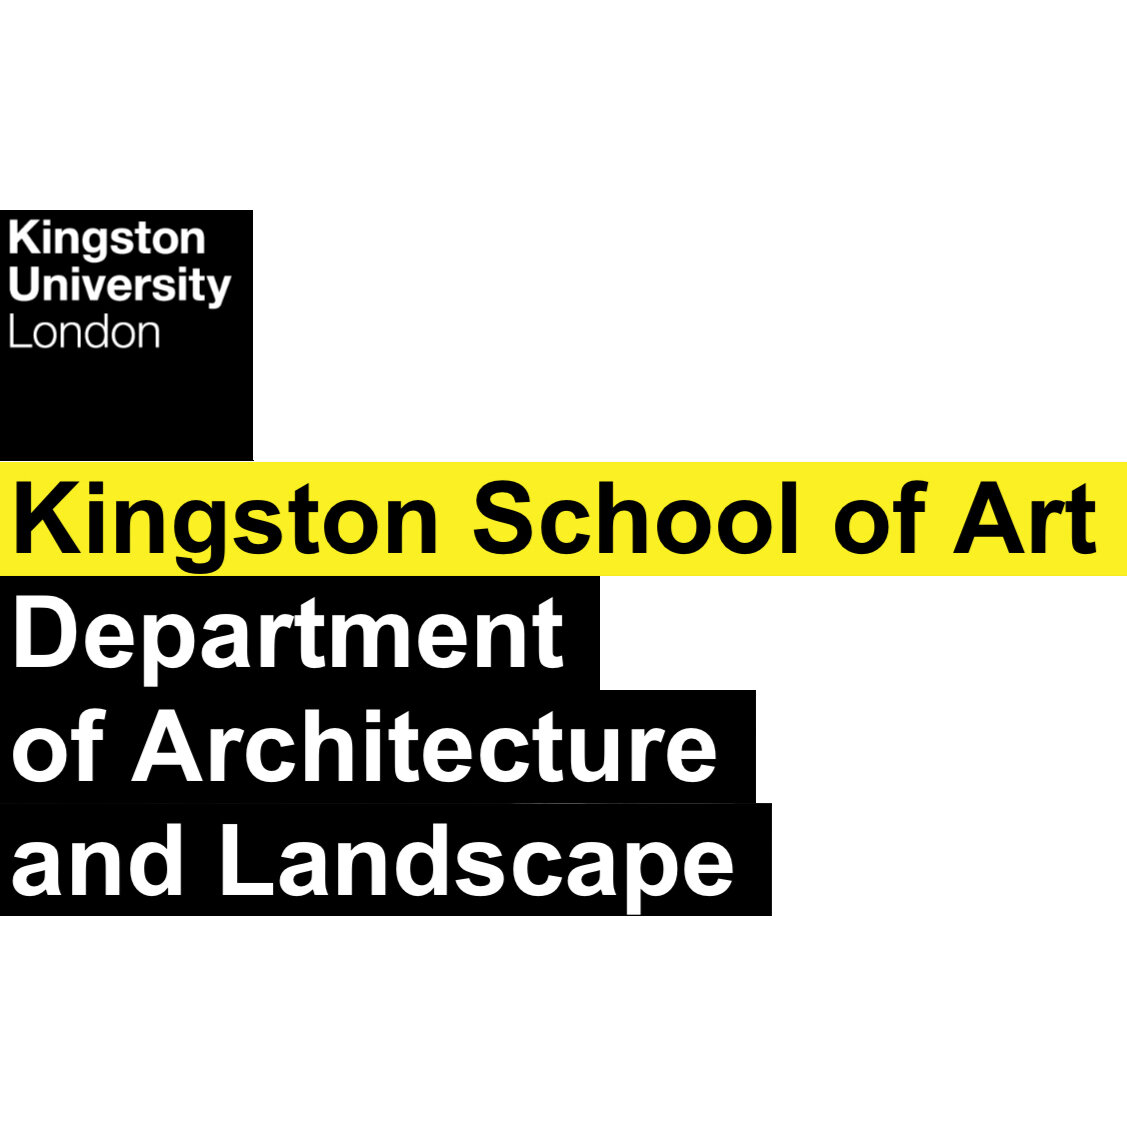 Kingston School of Art (Copy)